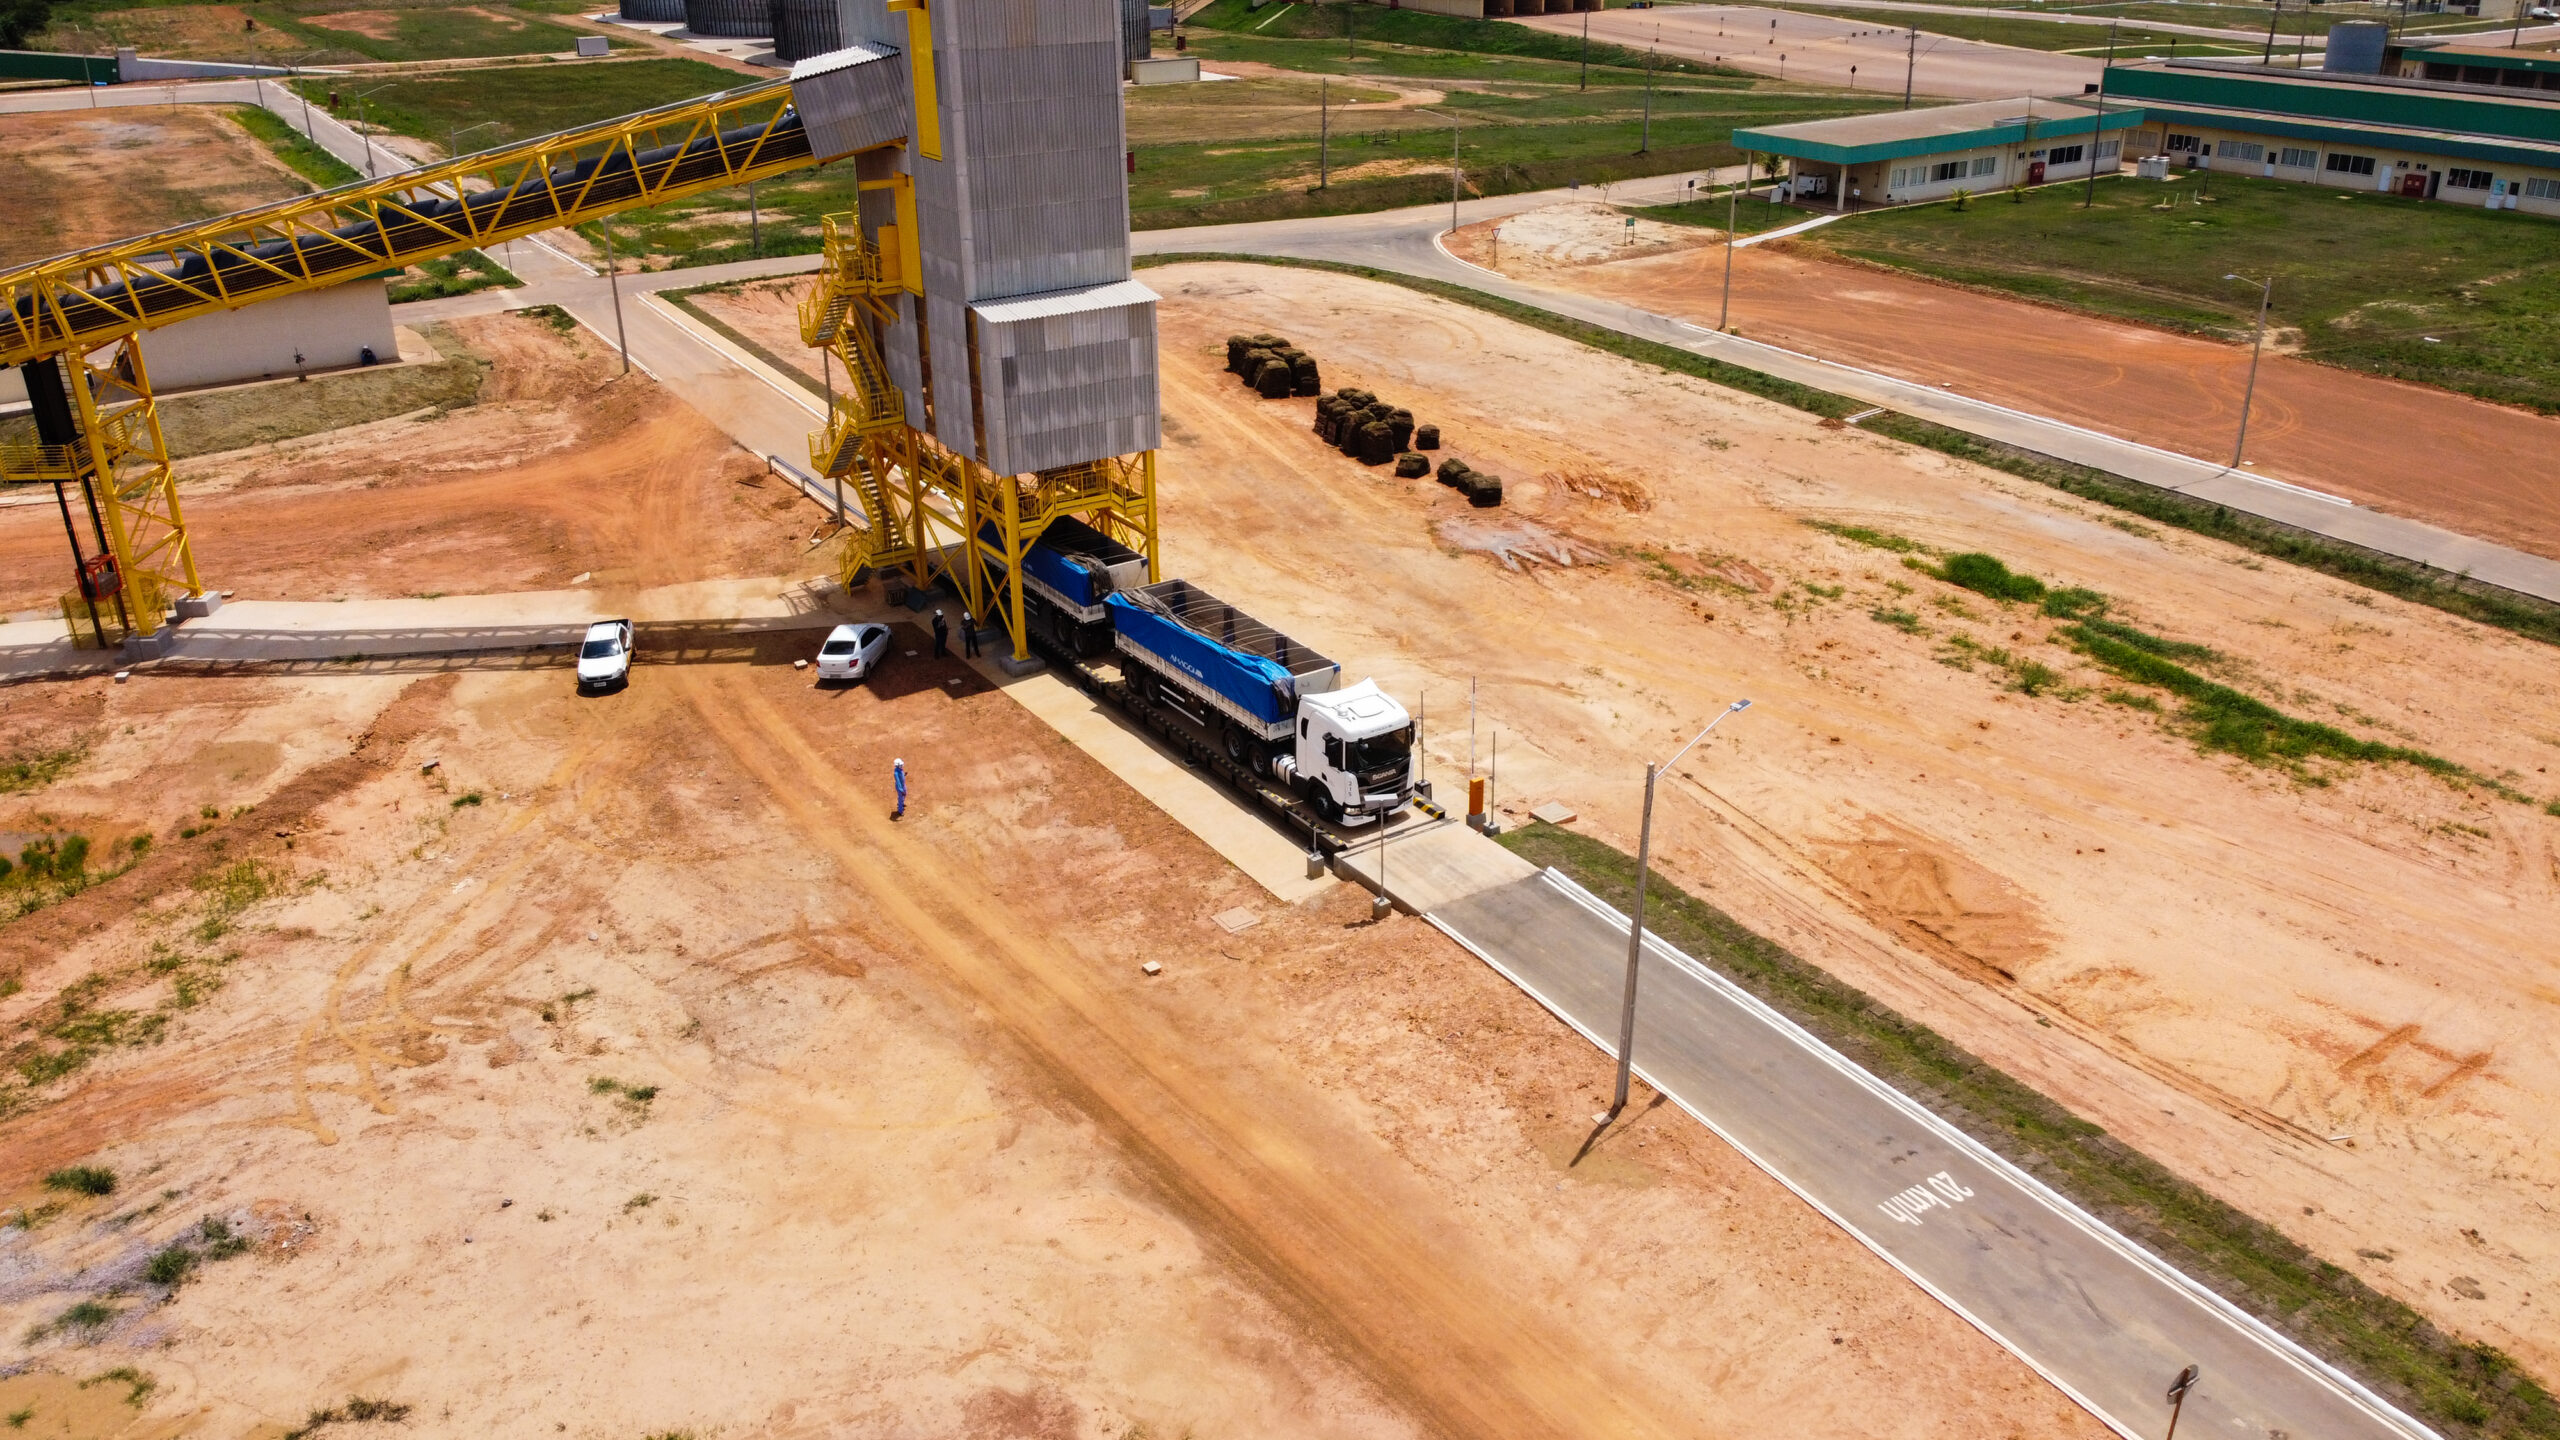 Carregamento de caminhão com fertilizantes no complexo de Portochuelo, Porto Velho (RO)